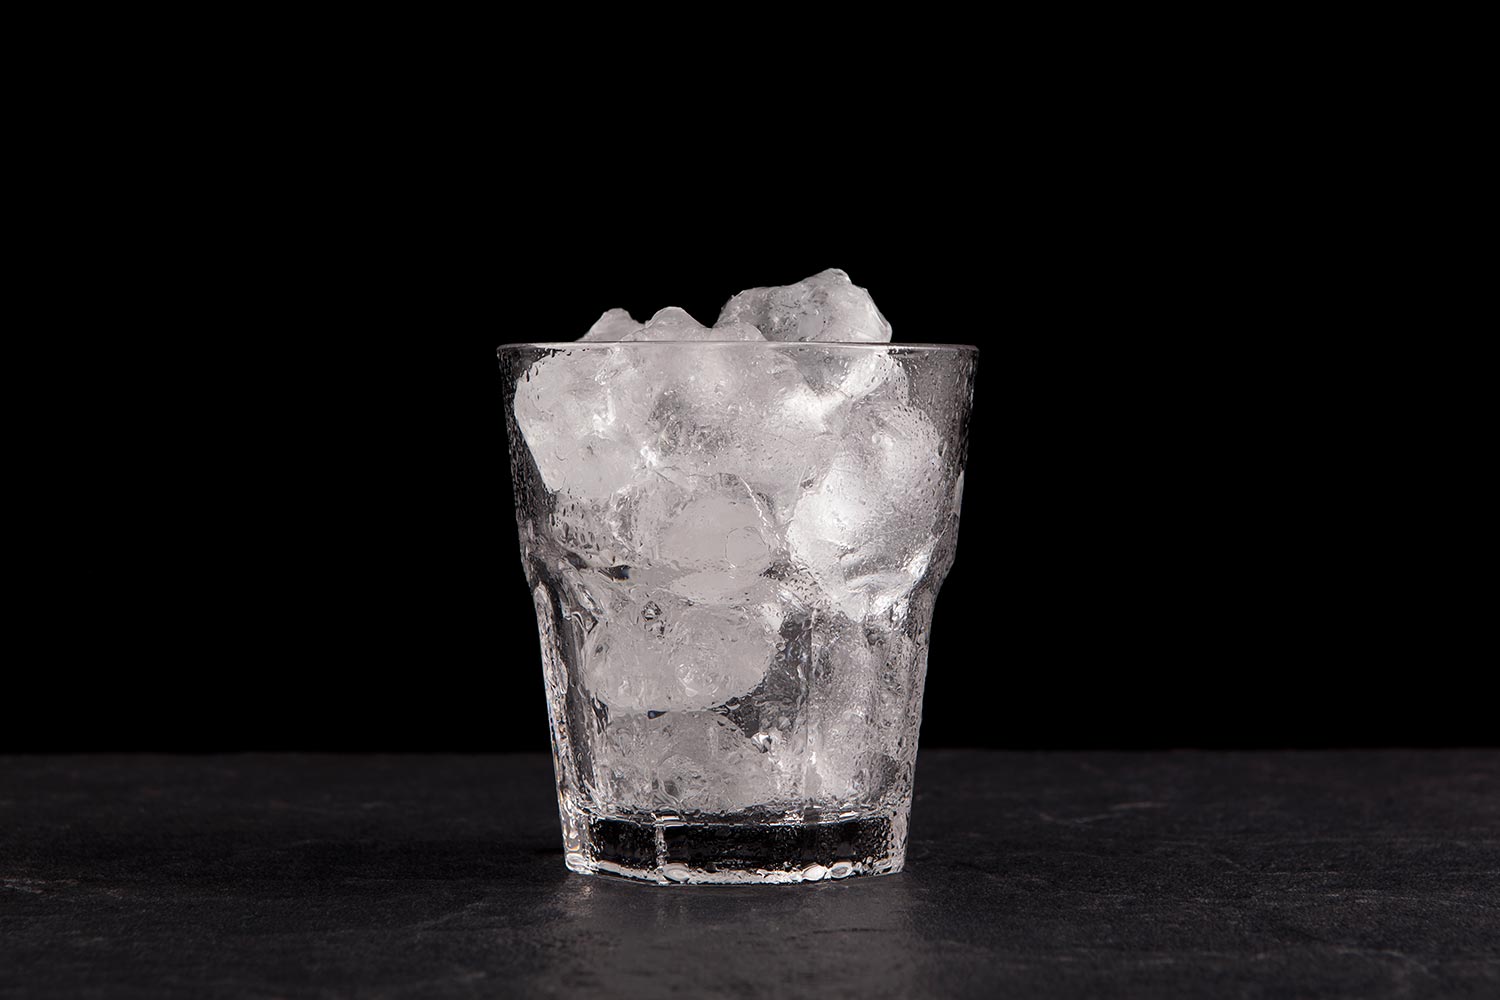 冰块装在透明的玻璃杯里